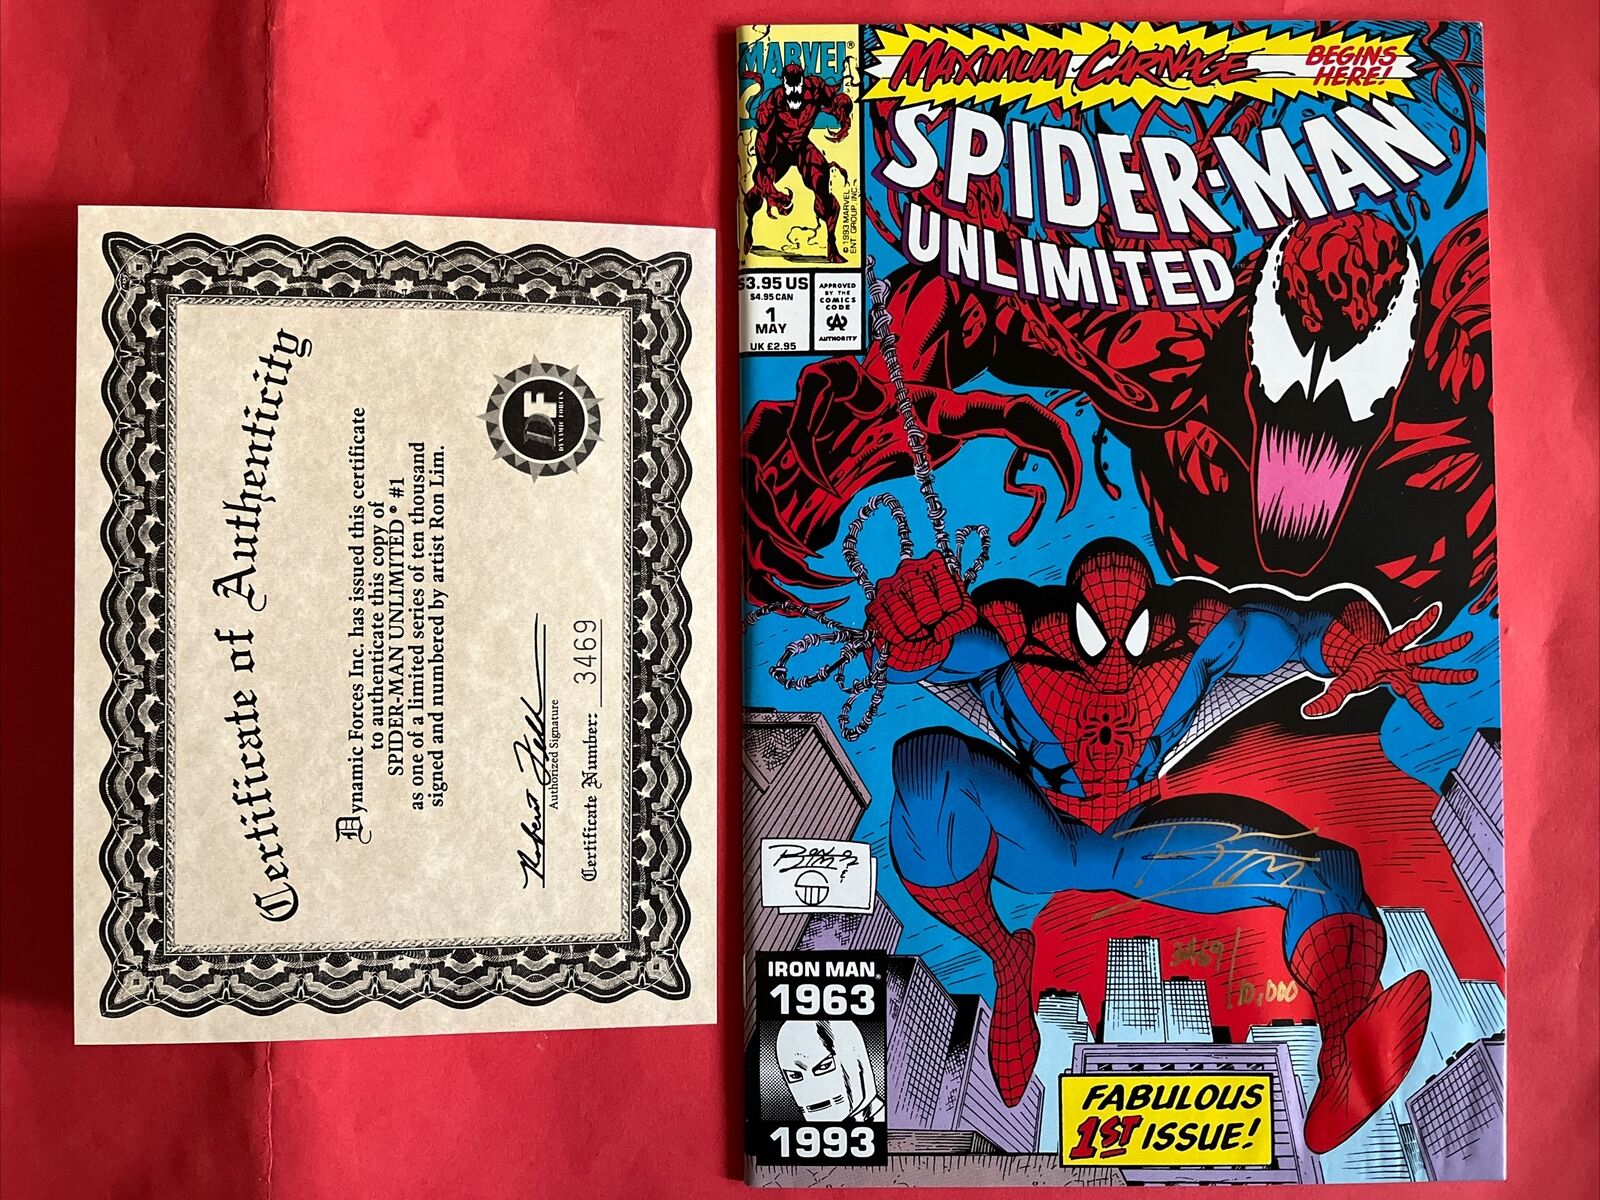 Spider-Man Unlimited #1 Signed Ron Lim /w COA ~ Damaged ~ 1993 Maximum Carnage